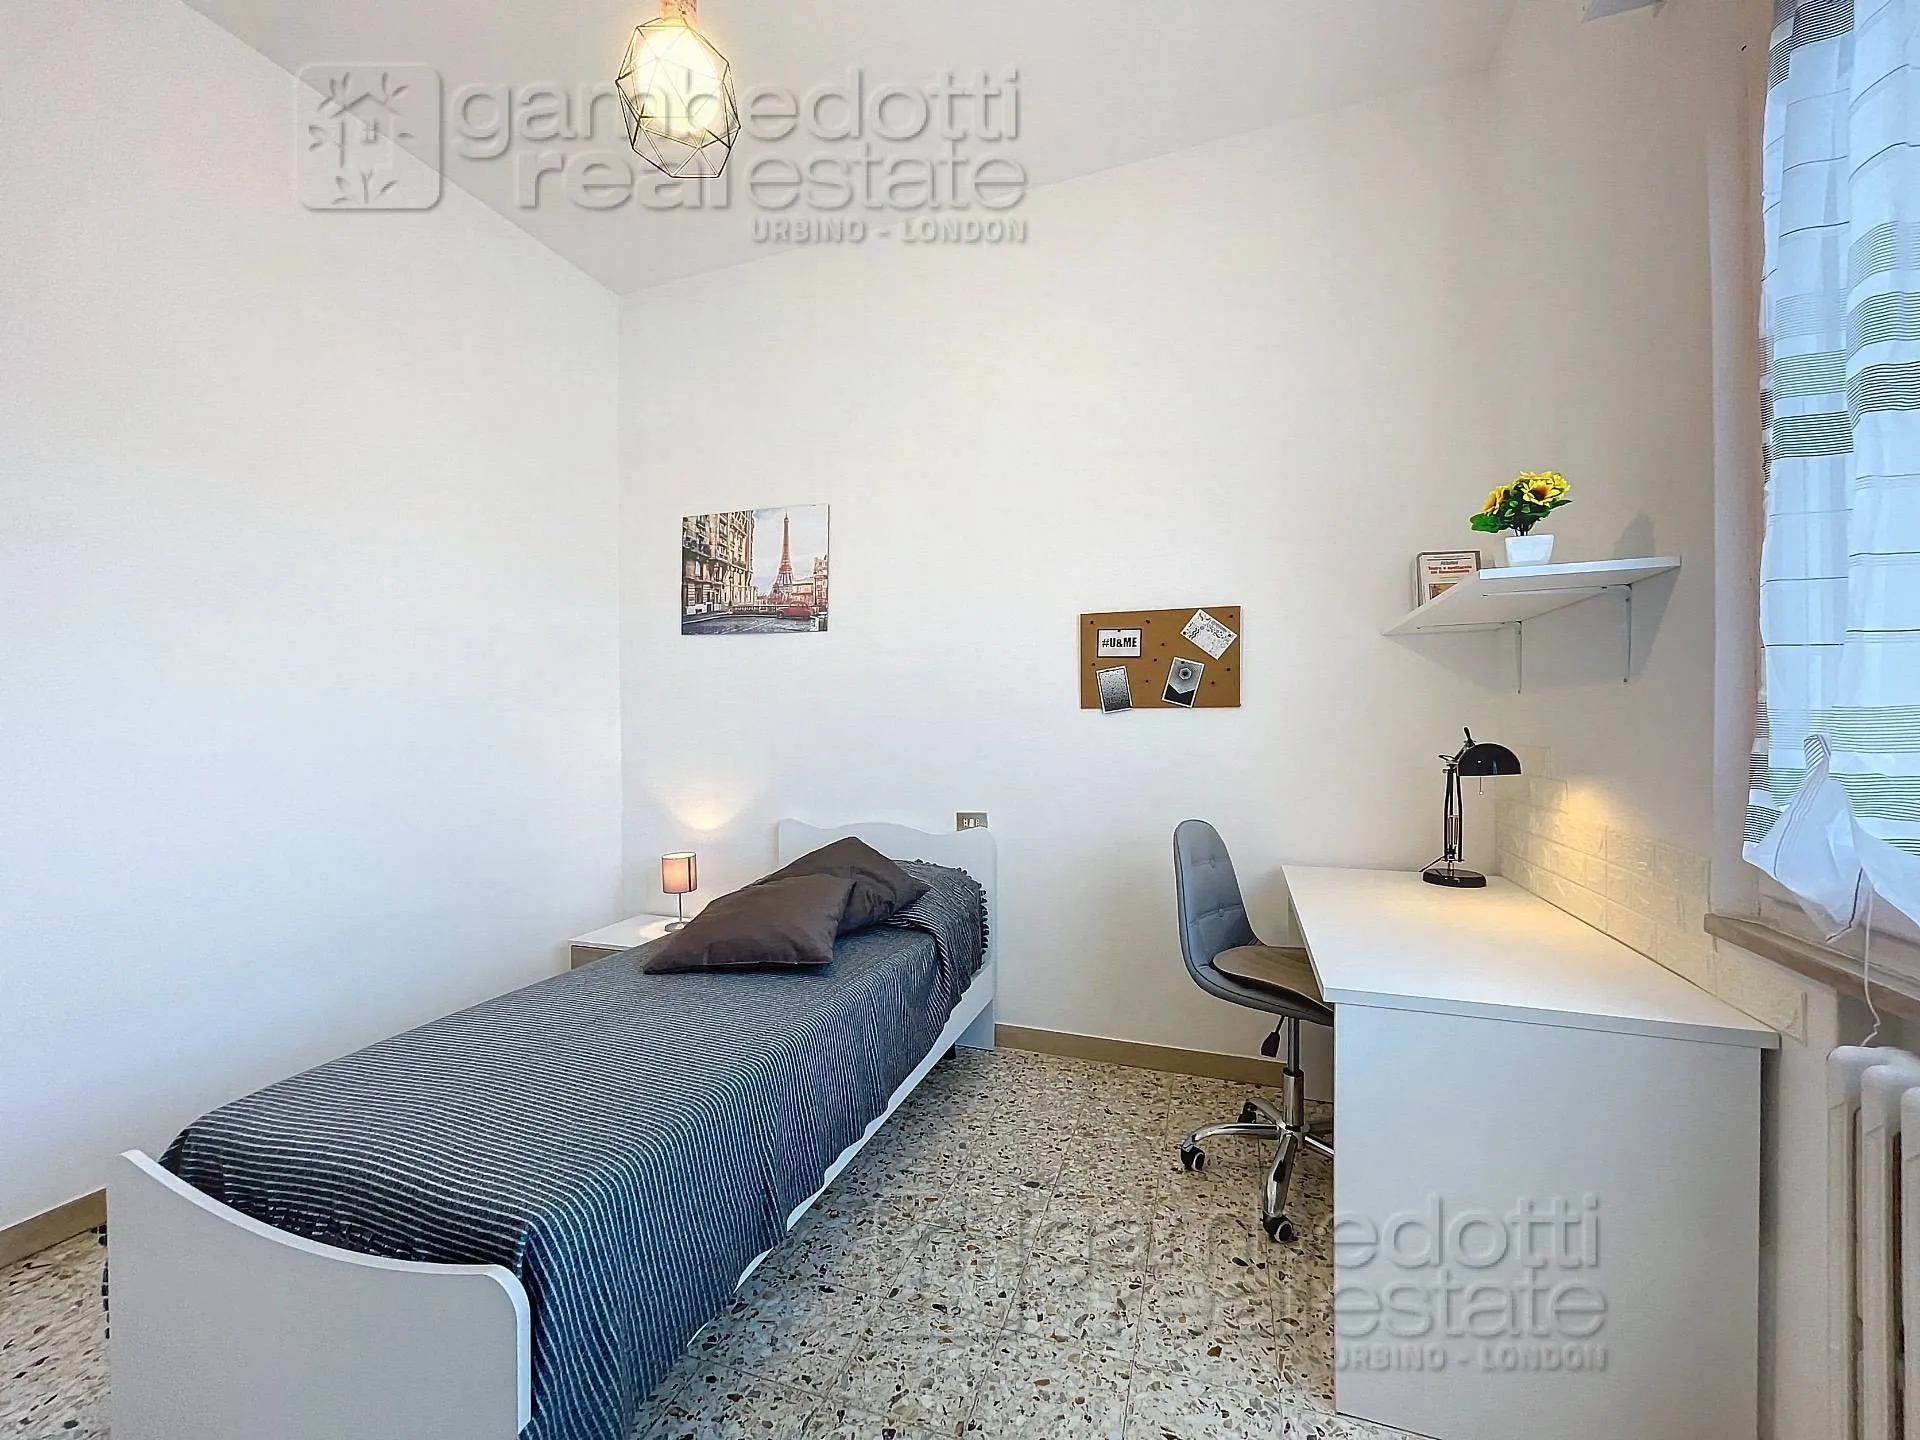 Immagine per Appartamento in affitto a Urbino